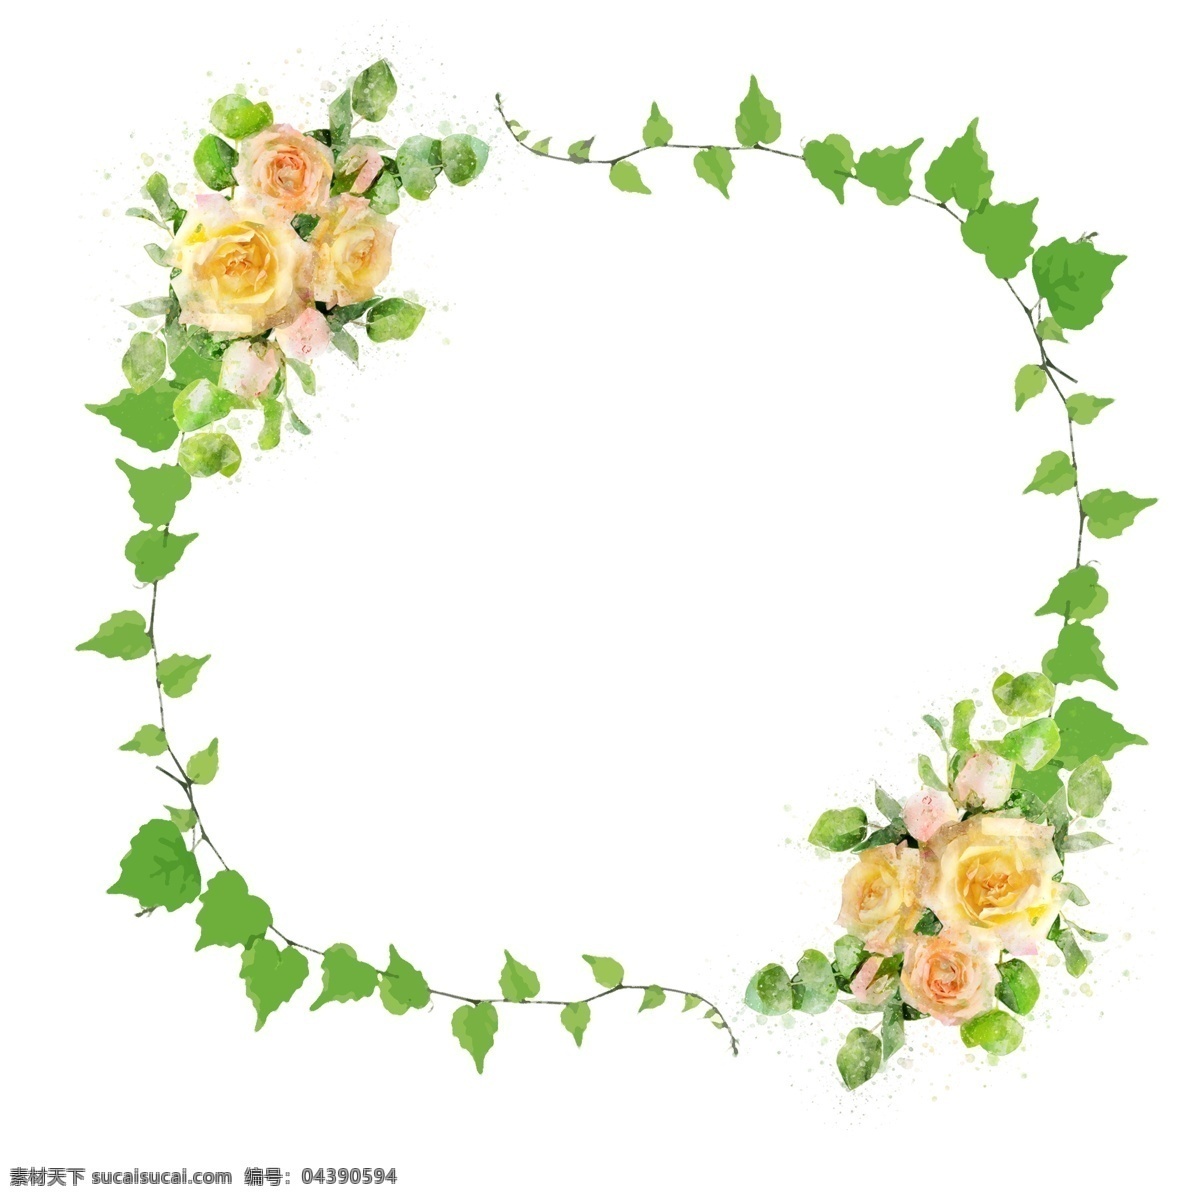 手绘 植物 花卉 圆形 边框 水彩 元素 黄色 绿色 原创 植物边框 圆形边框 手绘边框 水彩边框